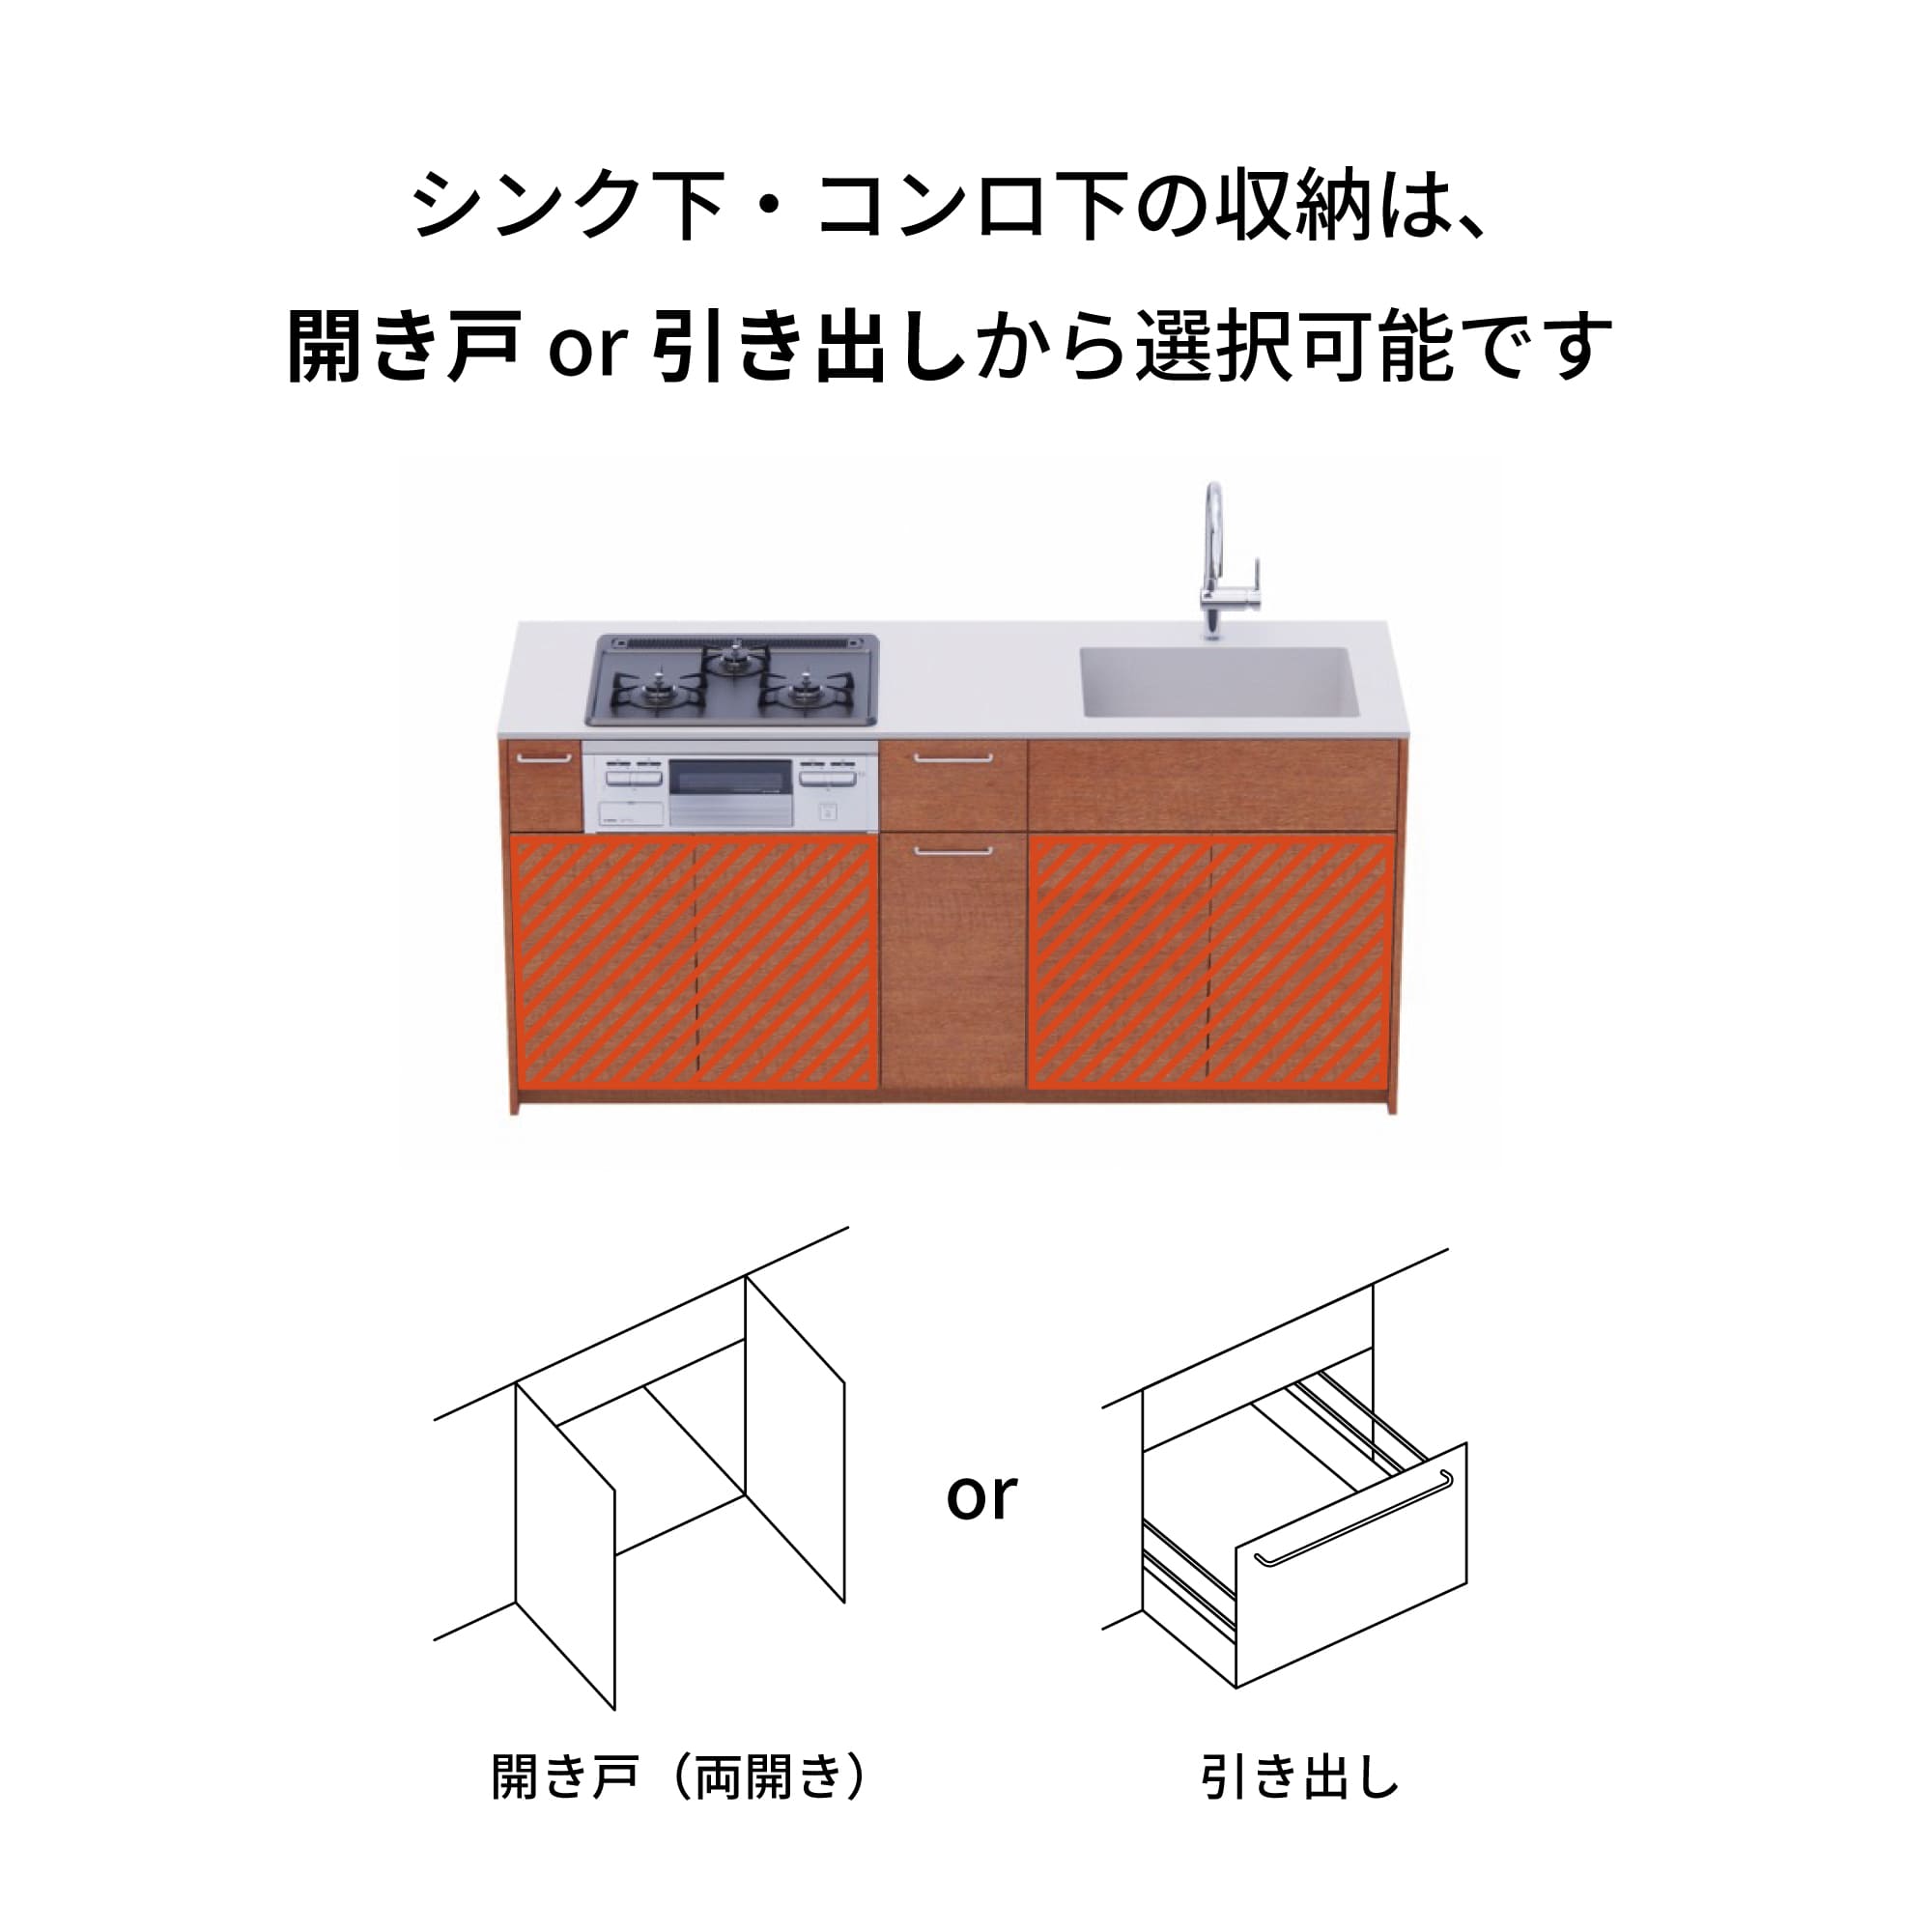 木製システムキッチン 壁付け型 W1840・コンロなし / オーブンなし / 食洗機なし KB-KC022-12-G183 引き出し下とコンロ下の収納が選択可能です